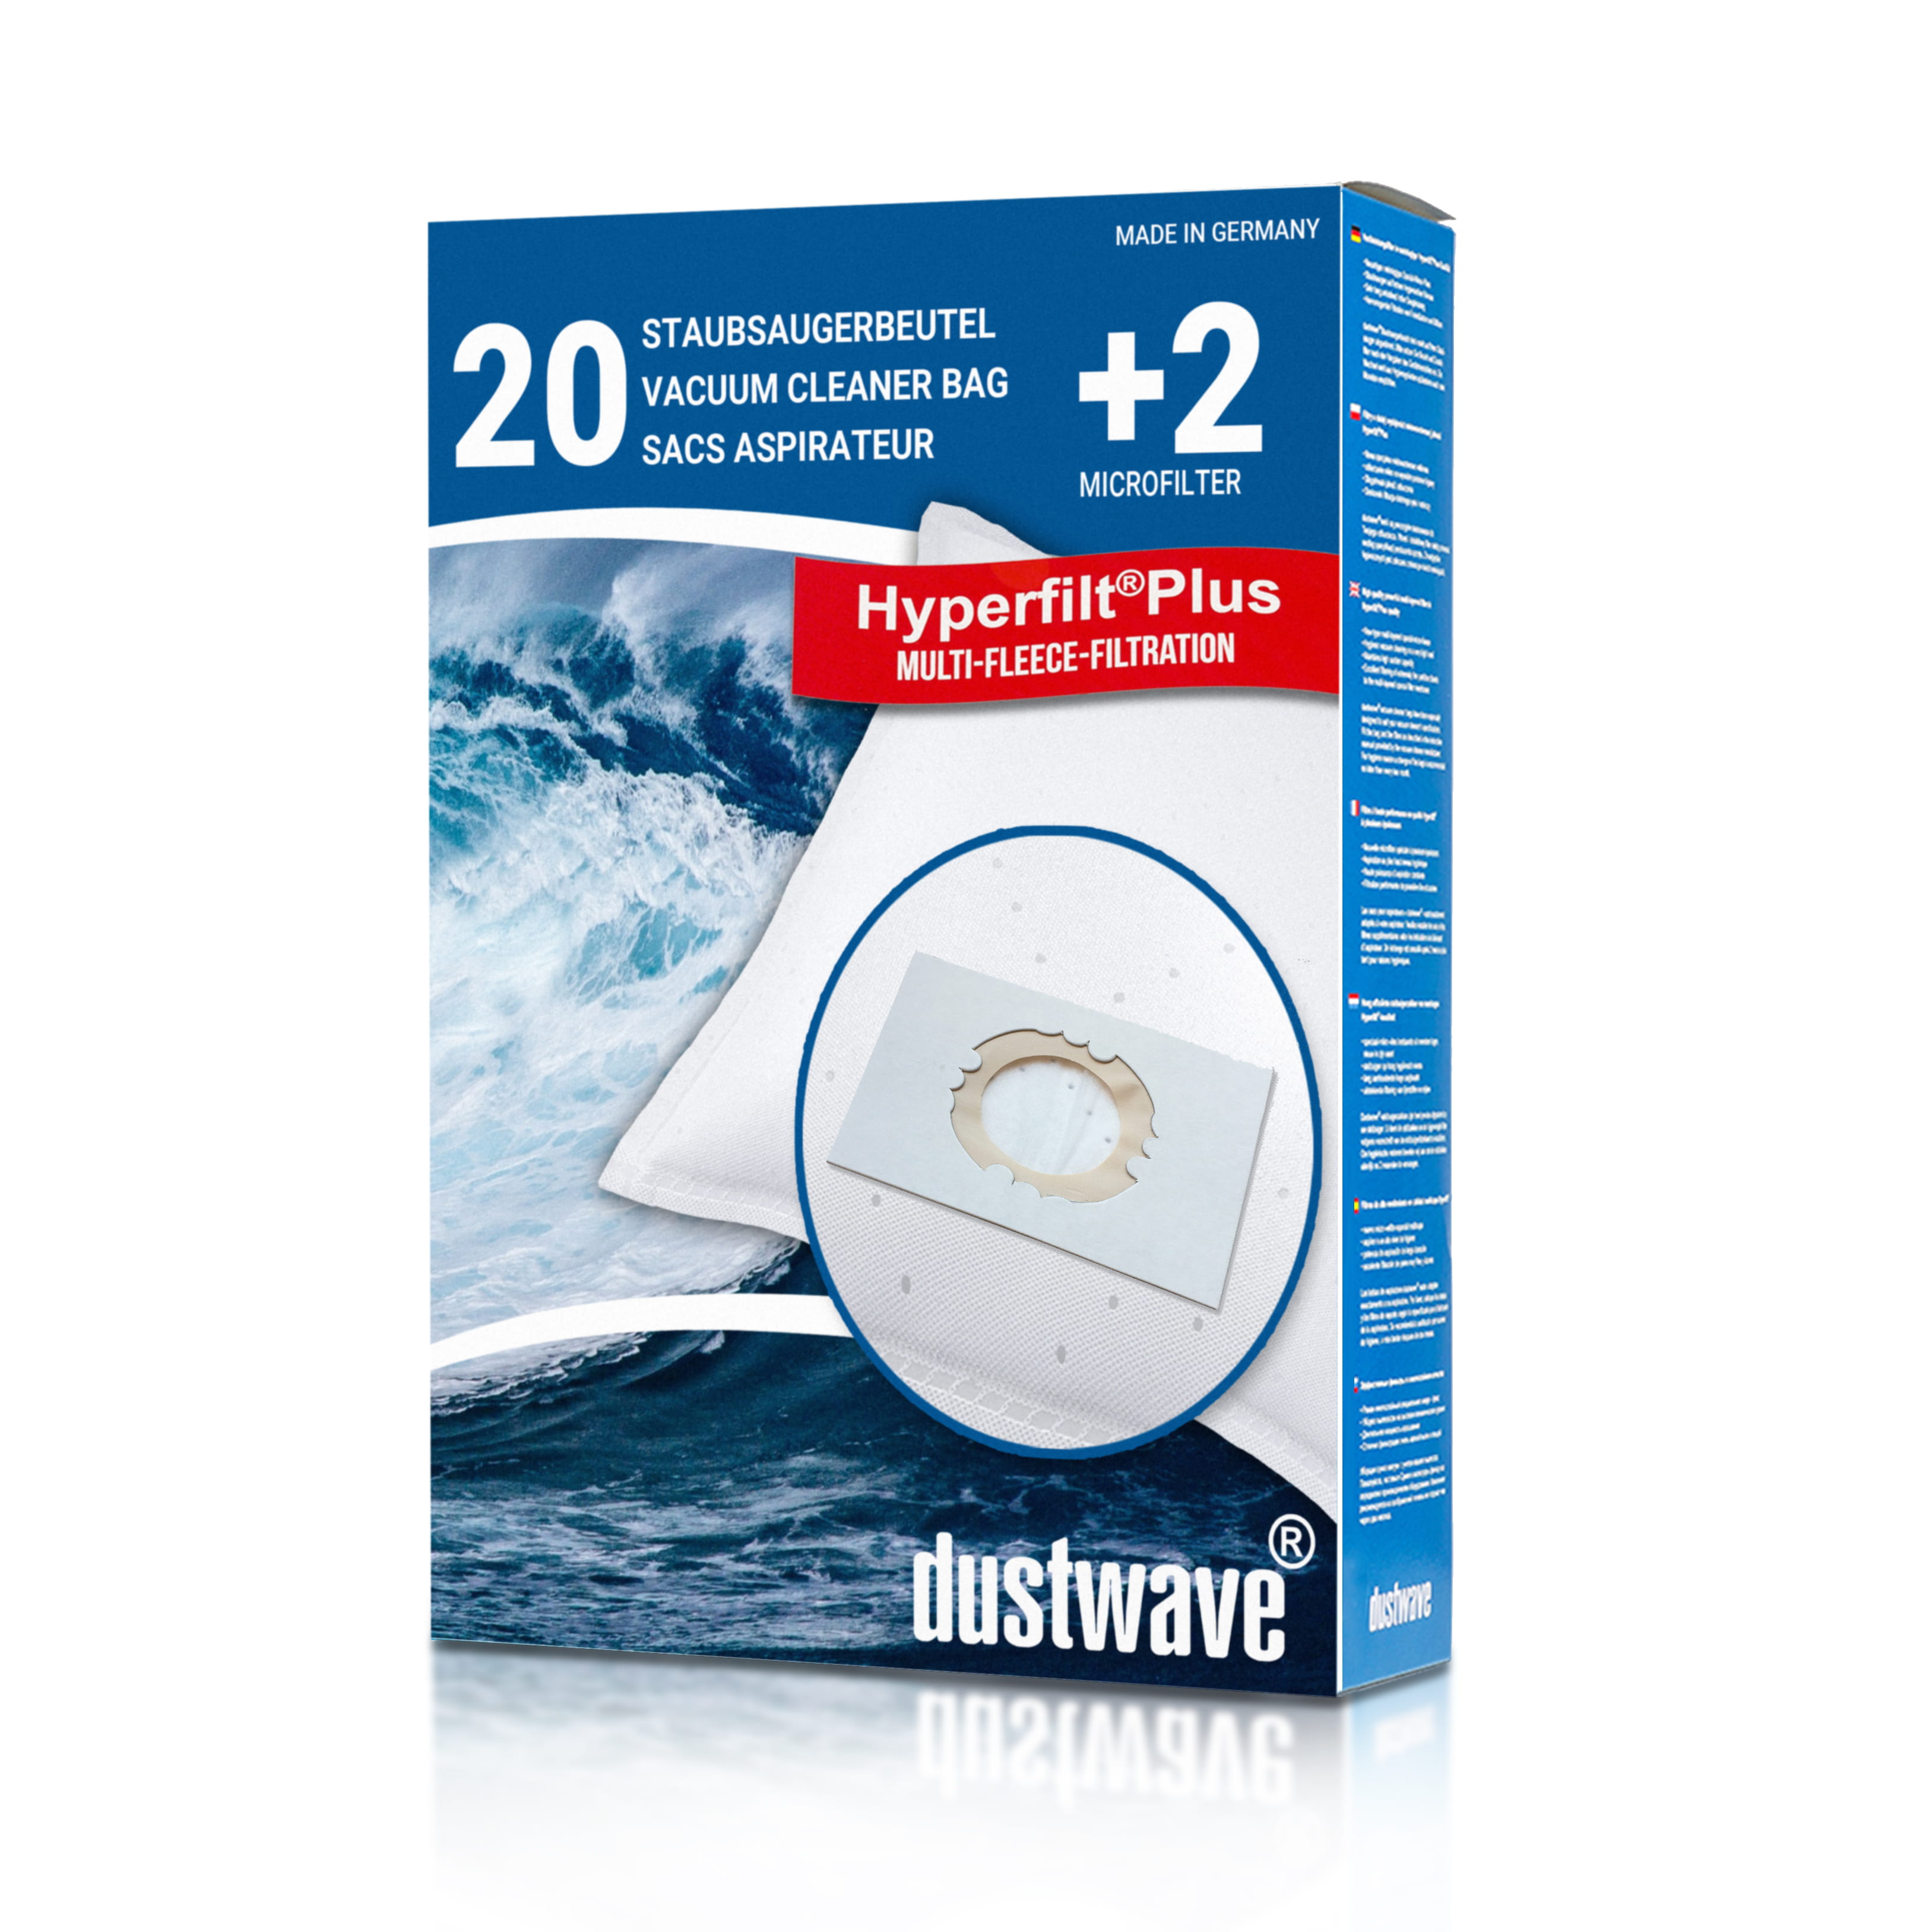 Dustwave® 20 Staubsaugerbeutel für Hoover SCST225FC011 - hocheffizient, mehrlagiges Mikrovlies mit Hygieneverschluss - Made in Germany